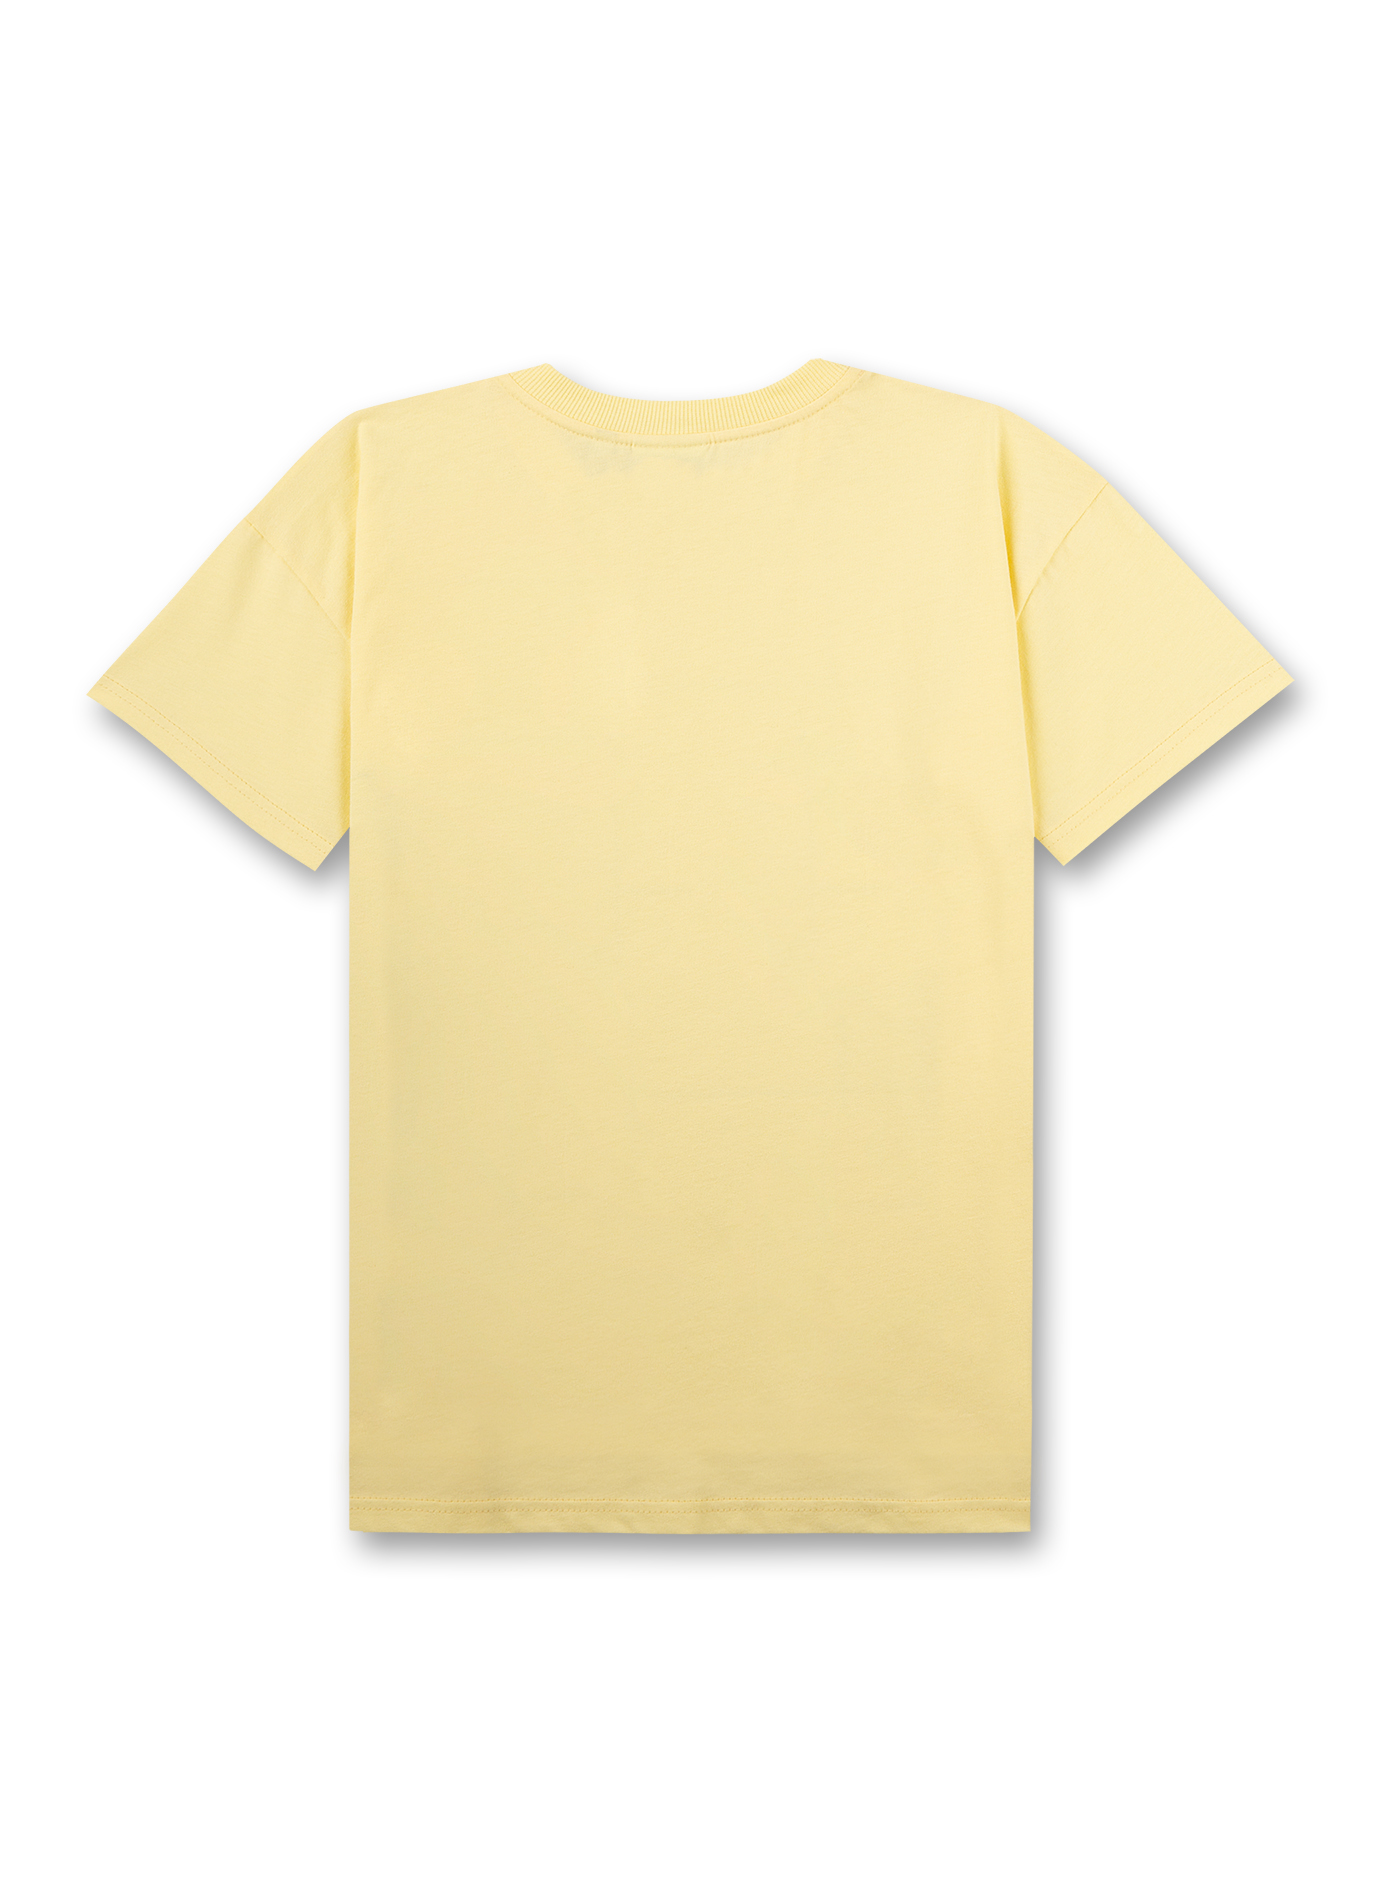 Jungen T-Shirt Gelb